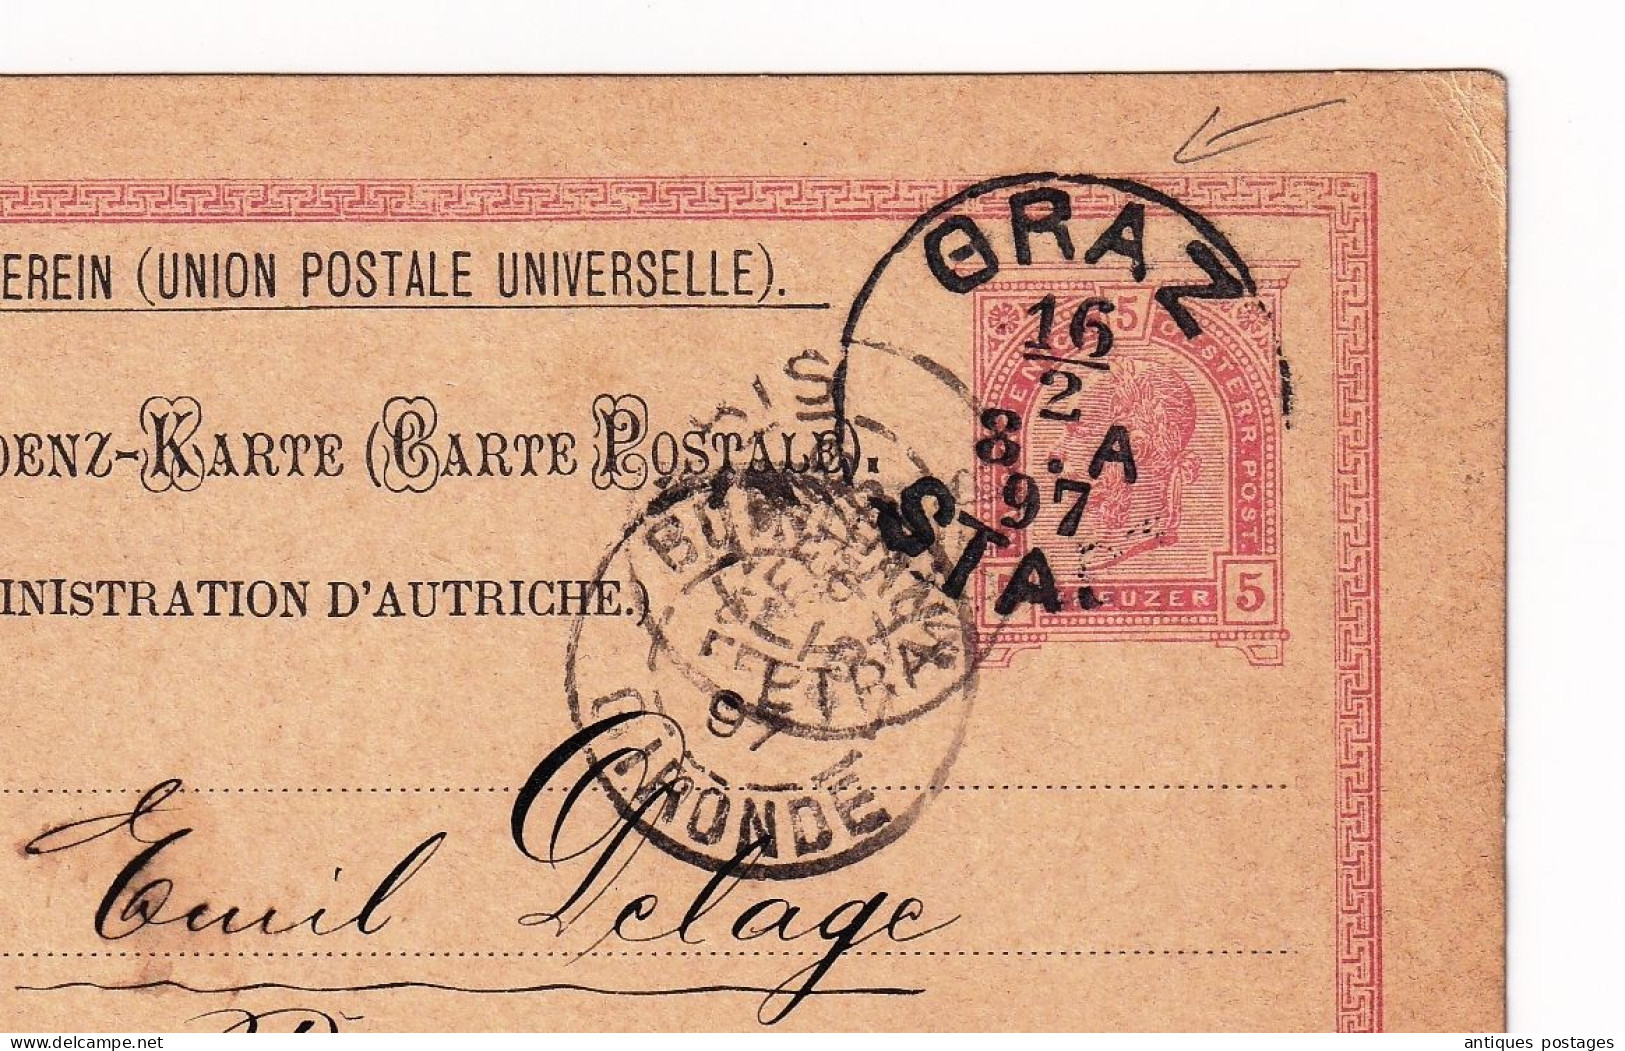 Graz 1897 Österreich Austria Autriche Bordeaux Gironde Union Postale Universelle Weltpost Verein Emile Delage - Tarjetas